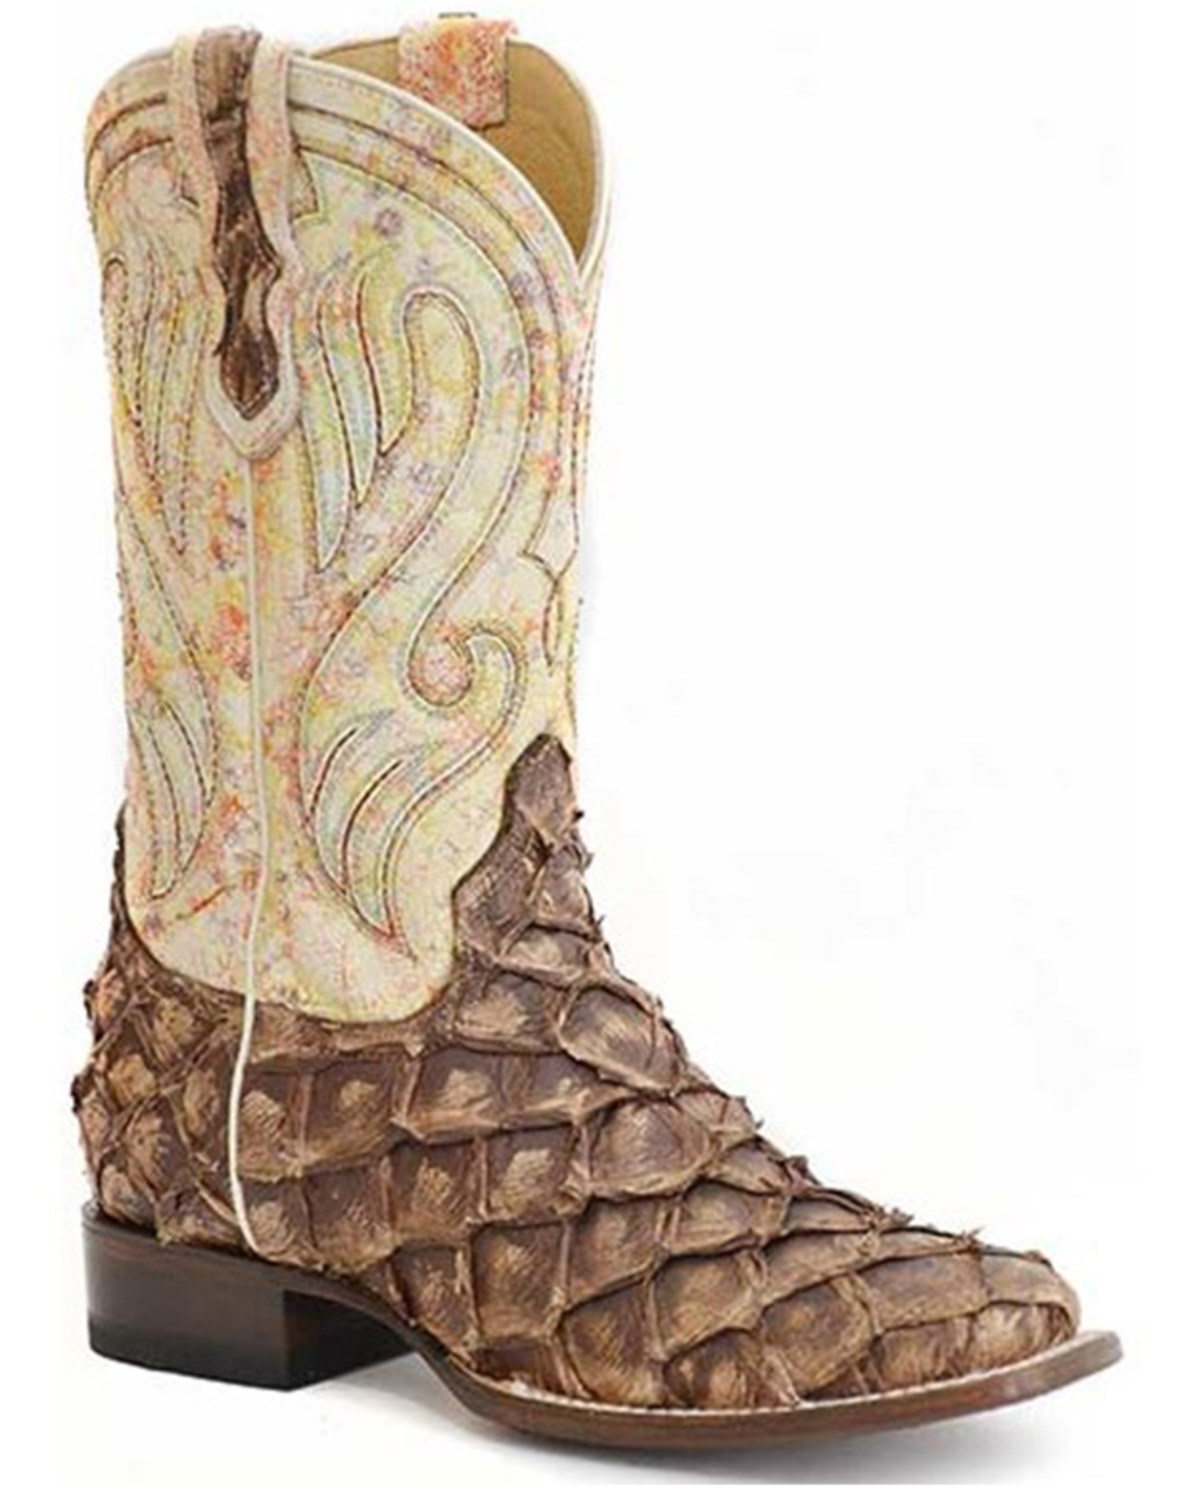 Roper Women's All Exotic Pirarucu Western Boots - Broad Square Toe